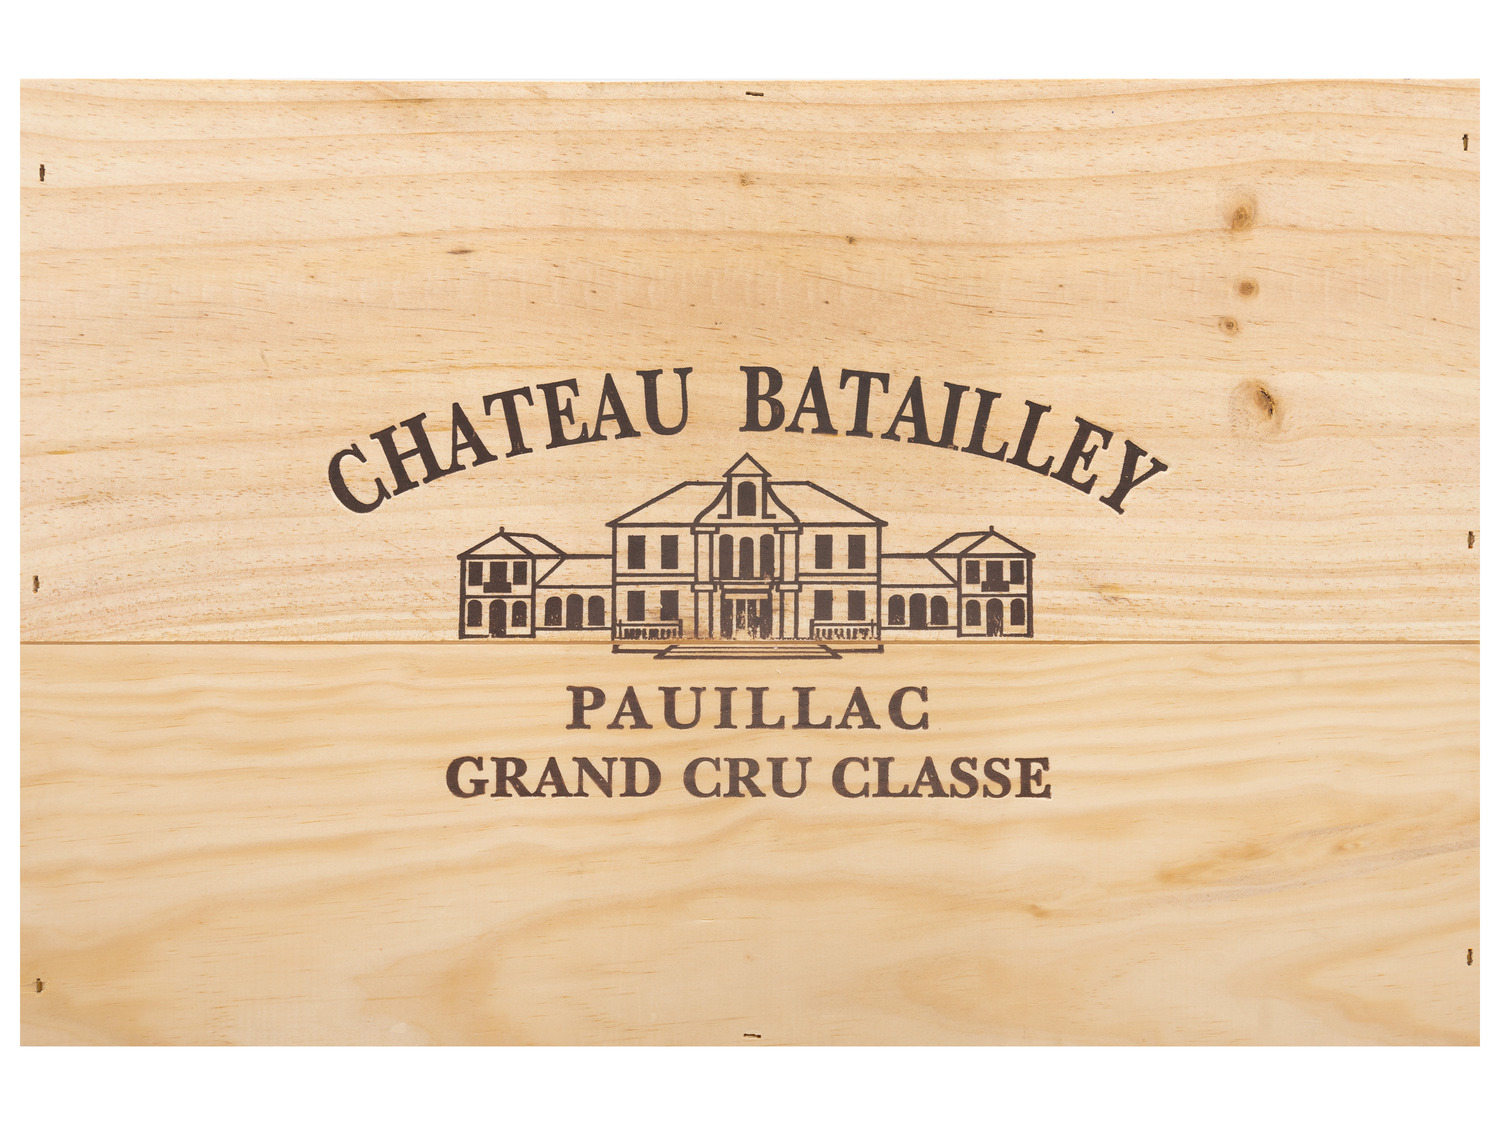 [Zu einem schockierenden Preis erhältlich!] 6 x 0,75-l-Flasche Pauillac Château Batailley 5éme Gra…